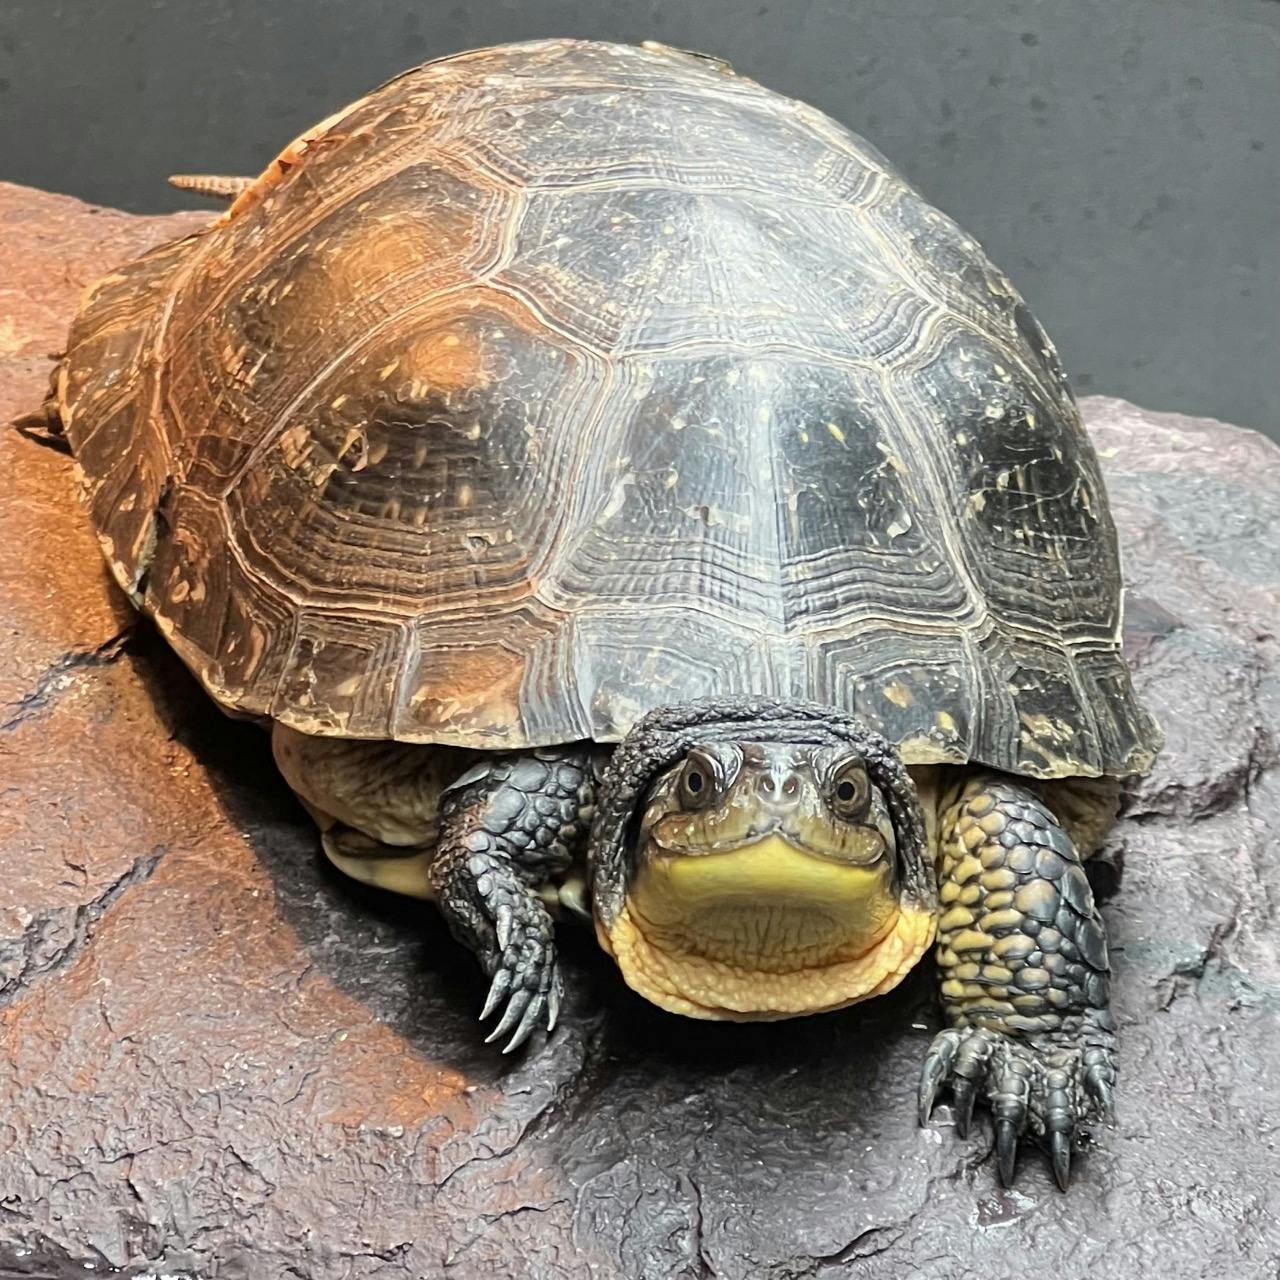 Hazel, a female Blanding's turtle